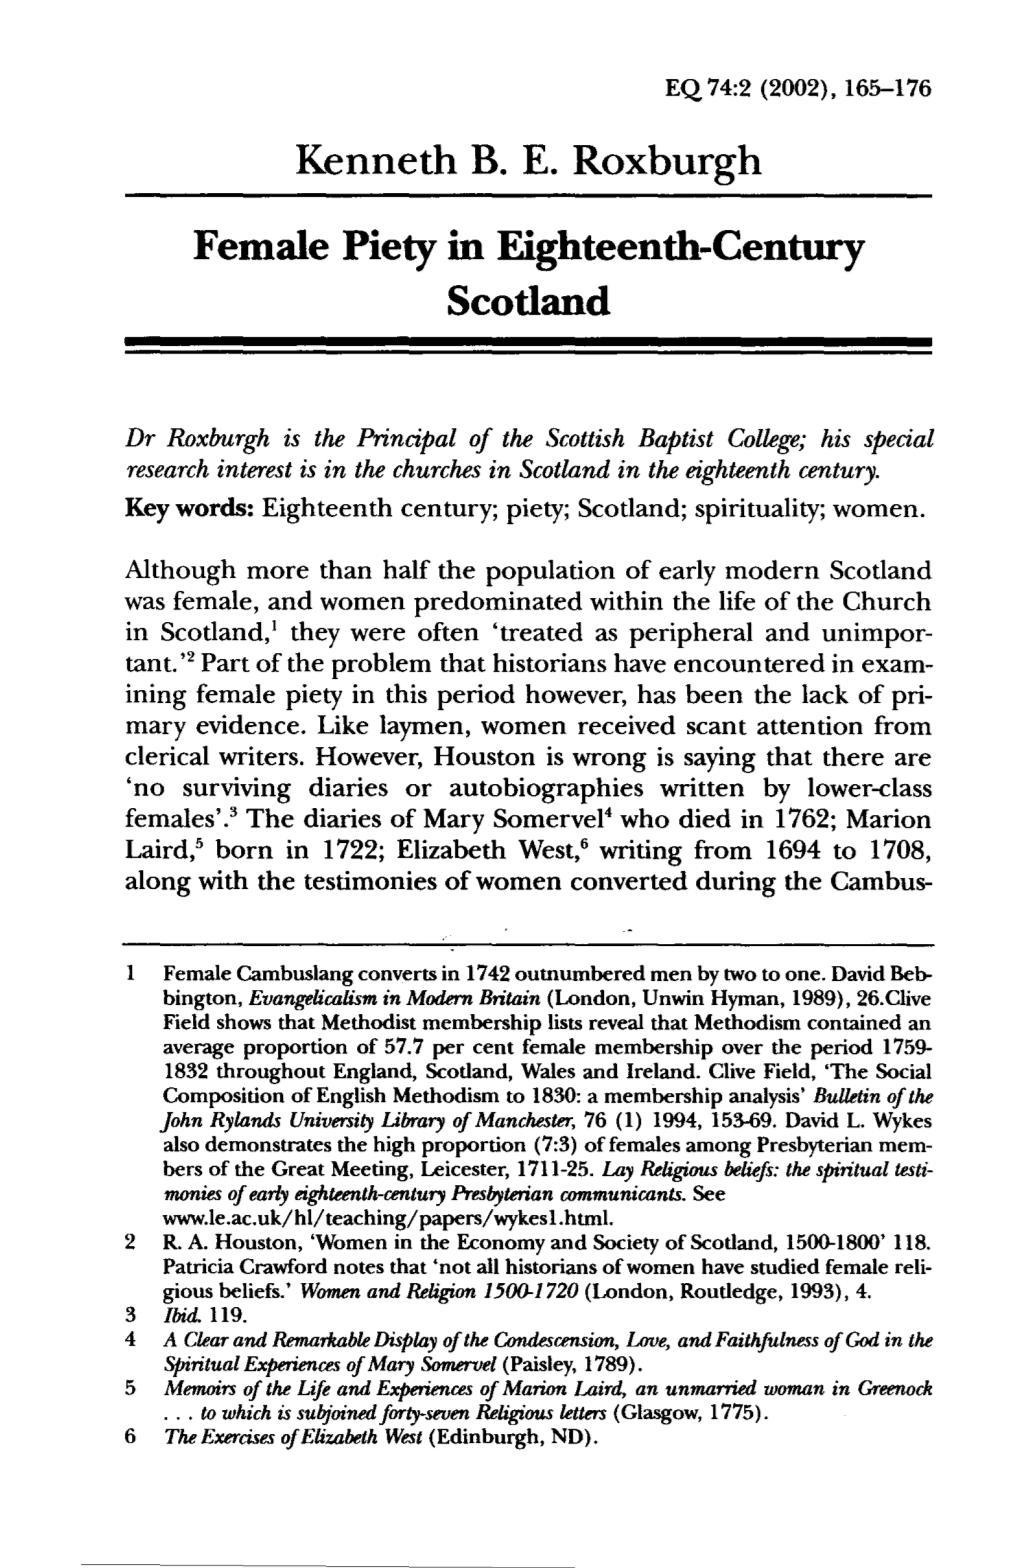 Female Piety in Eighteenth-Century Scotland